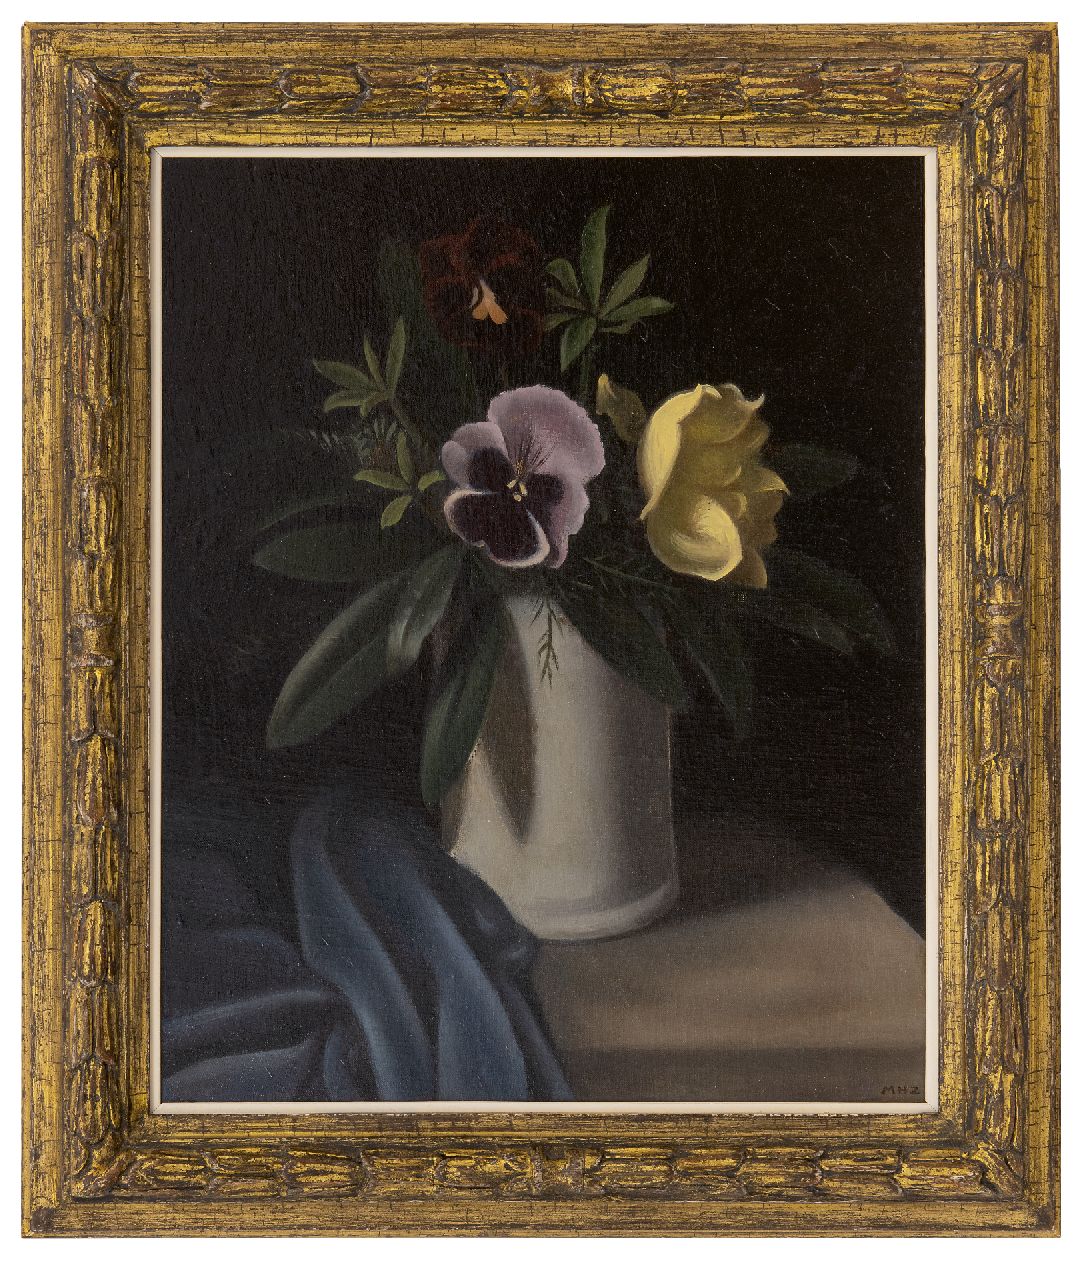 Hynckes-Zahn M.  | Marguerite Hynckes-Zahn | Schilderijen te koop aangeboden | Bloemstilleven met viooltje en roos, olieverf op doek op board 42,6 x 33,7 cm, gesigneerd rechtsonder met initialen